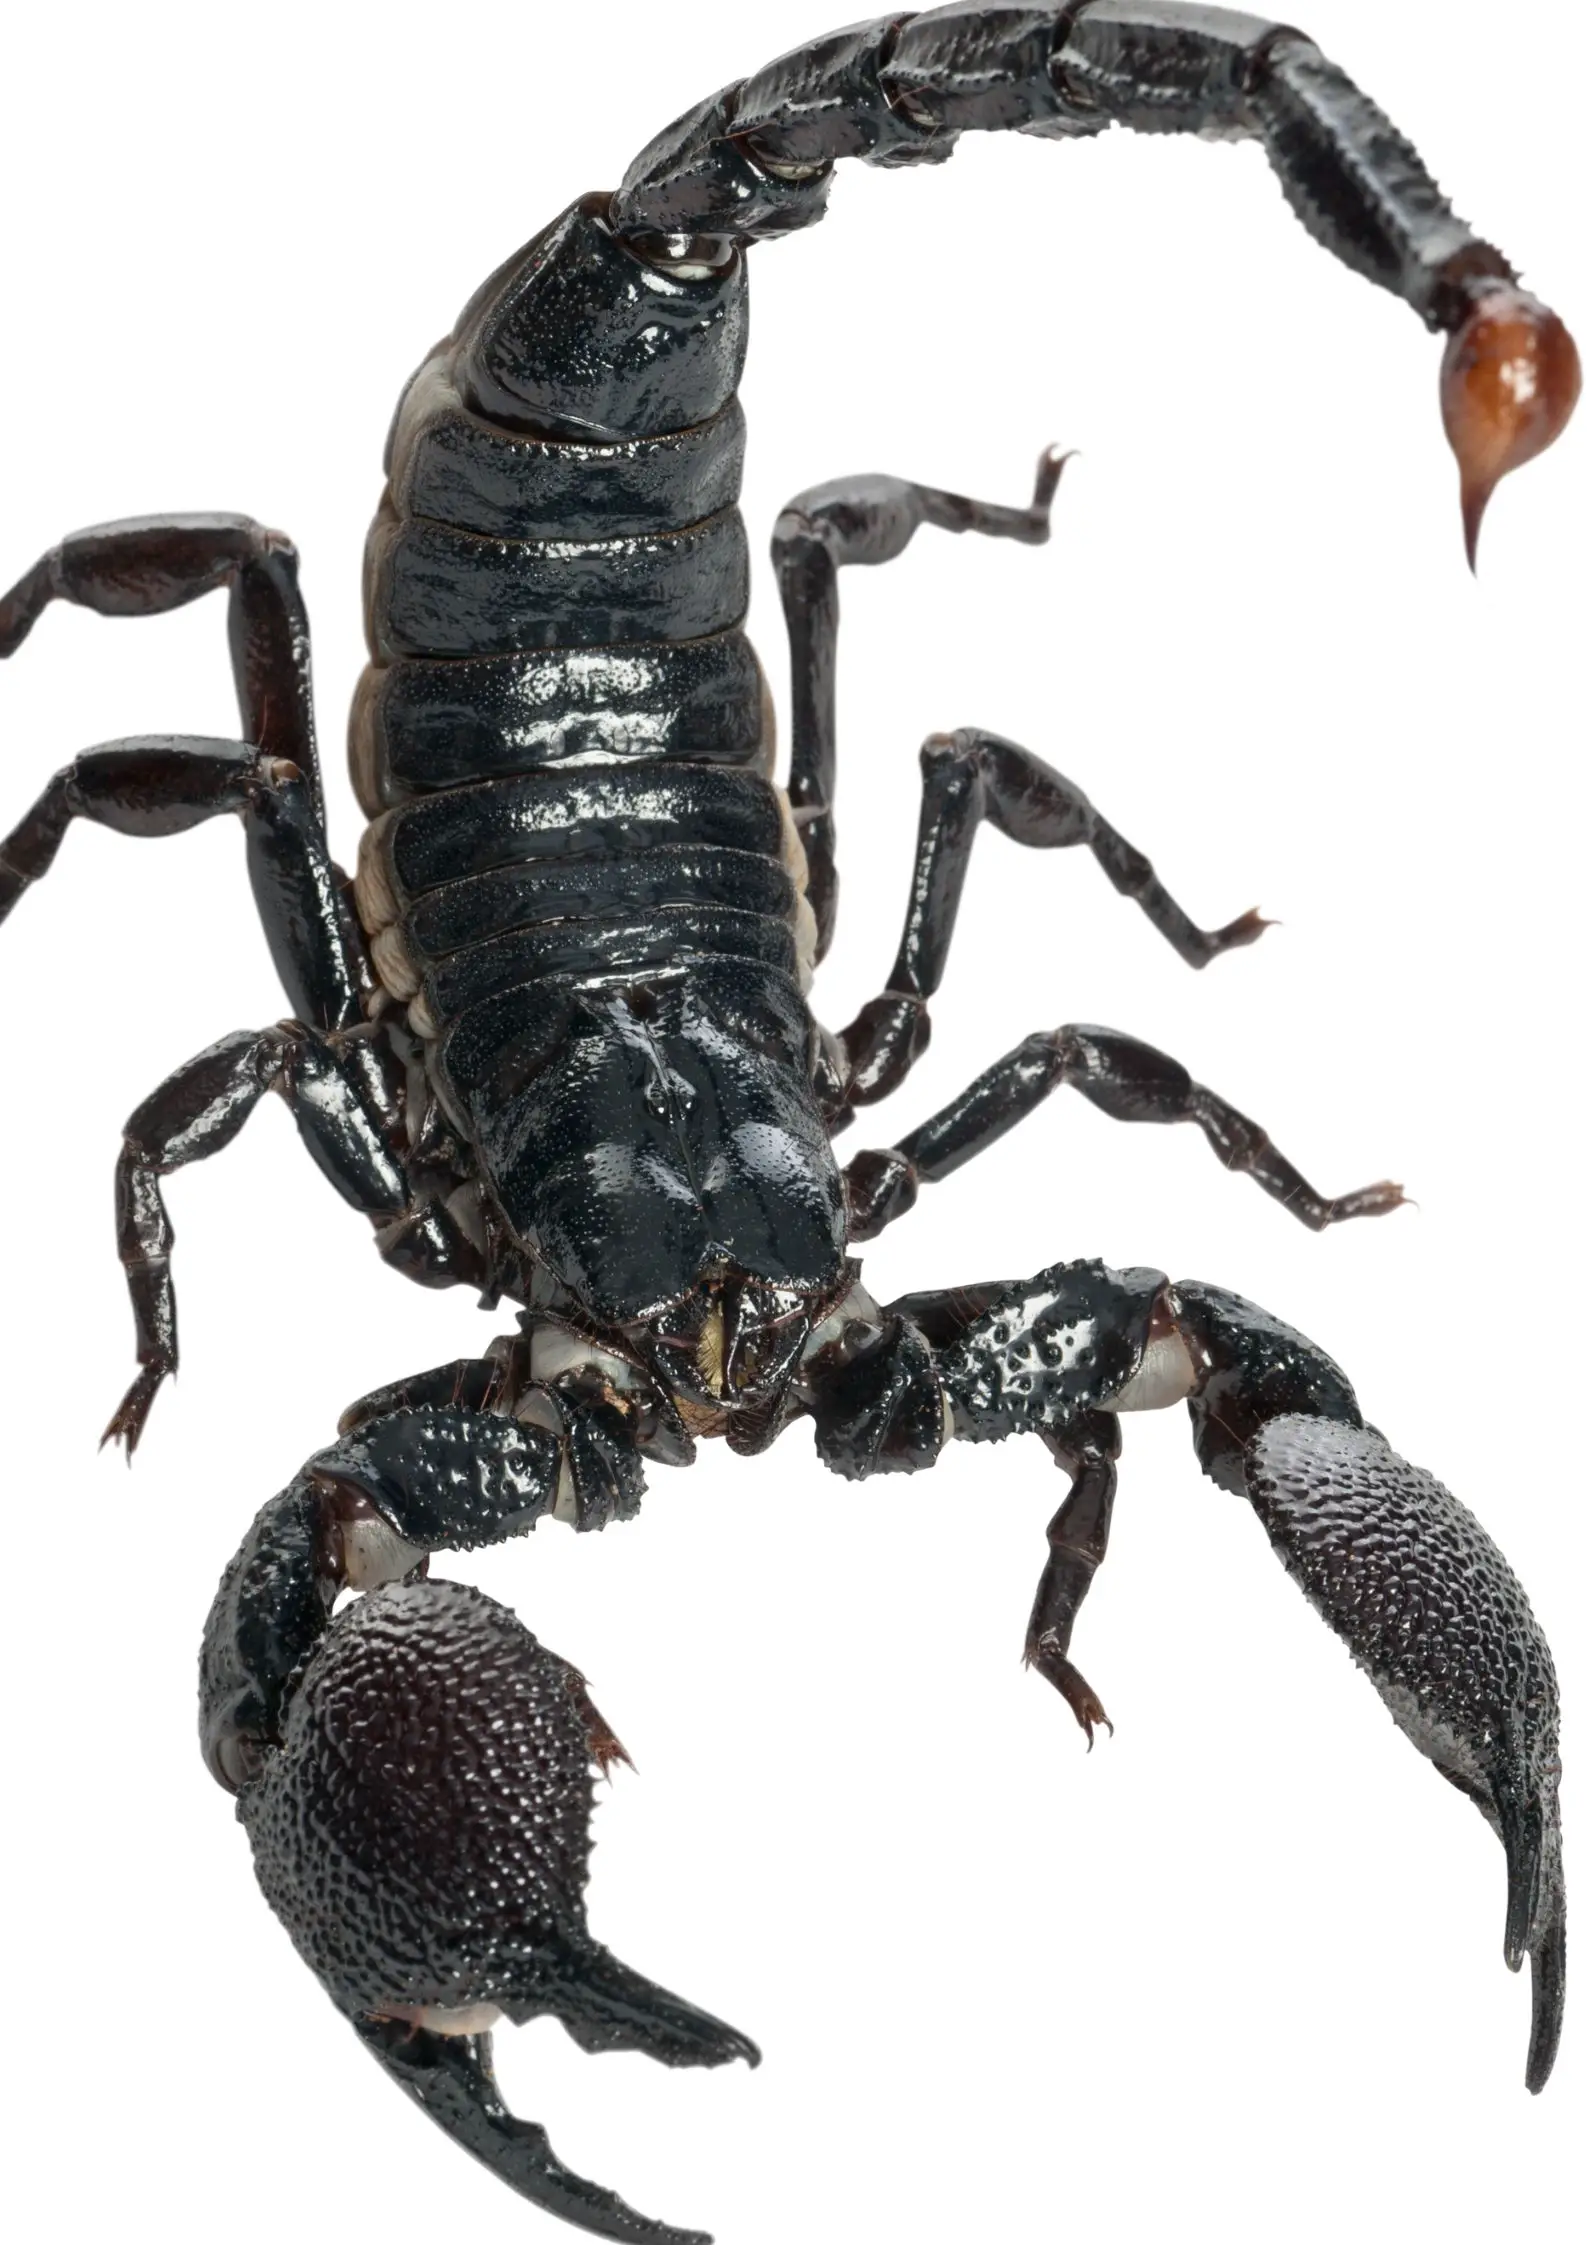 How big do Emperor Scorpions get?